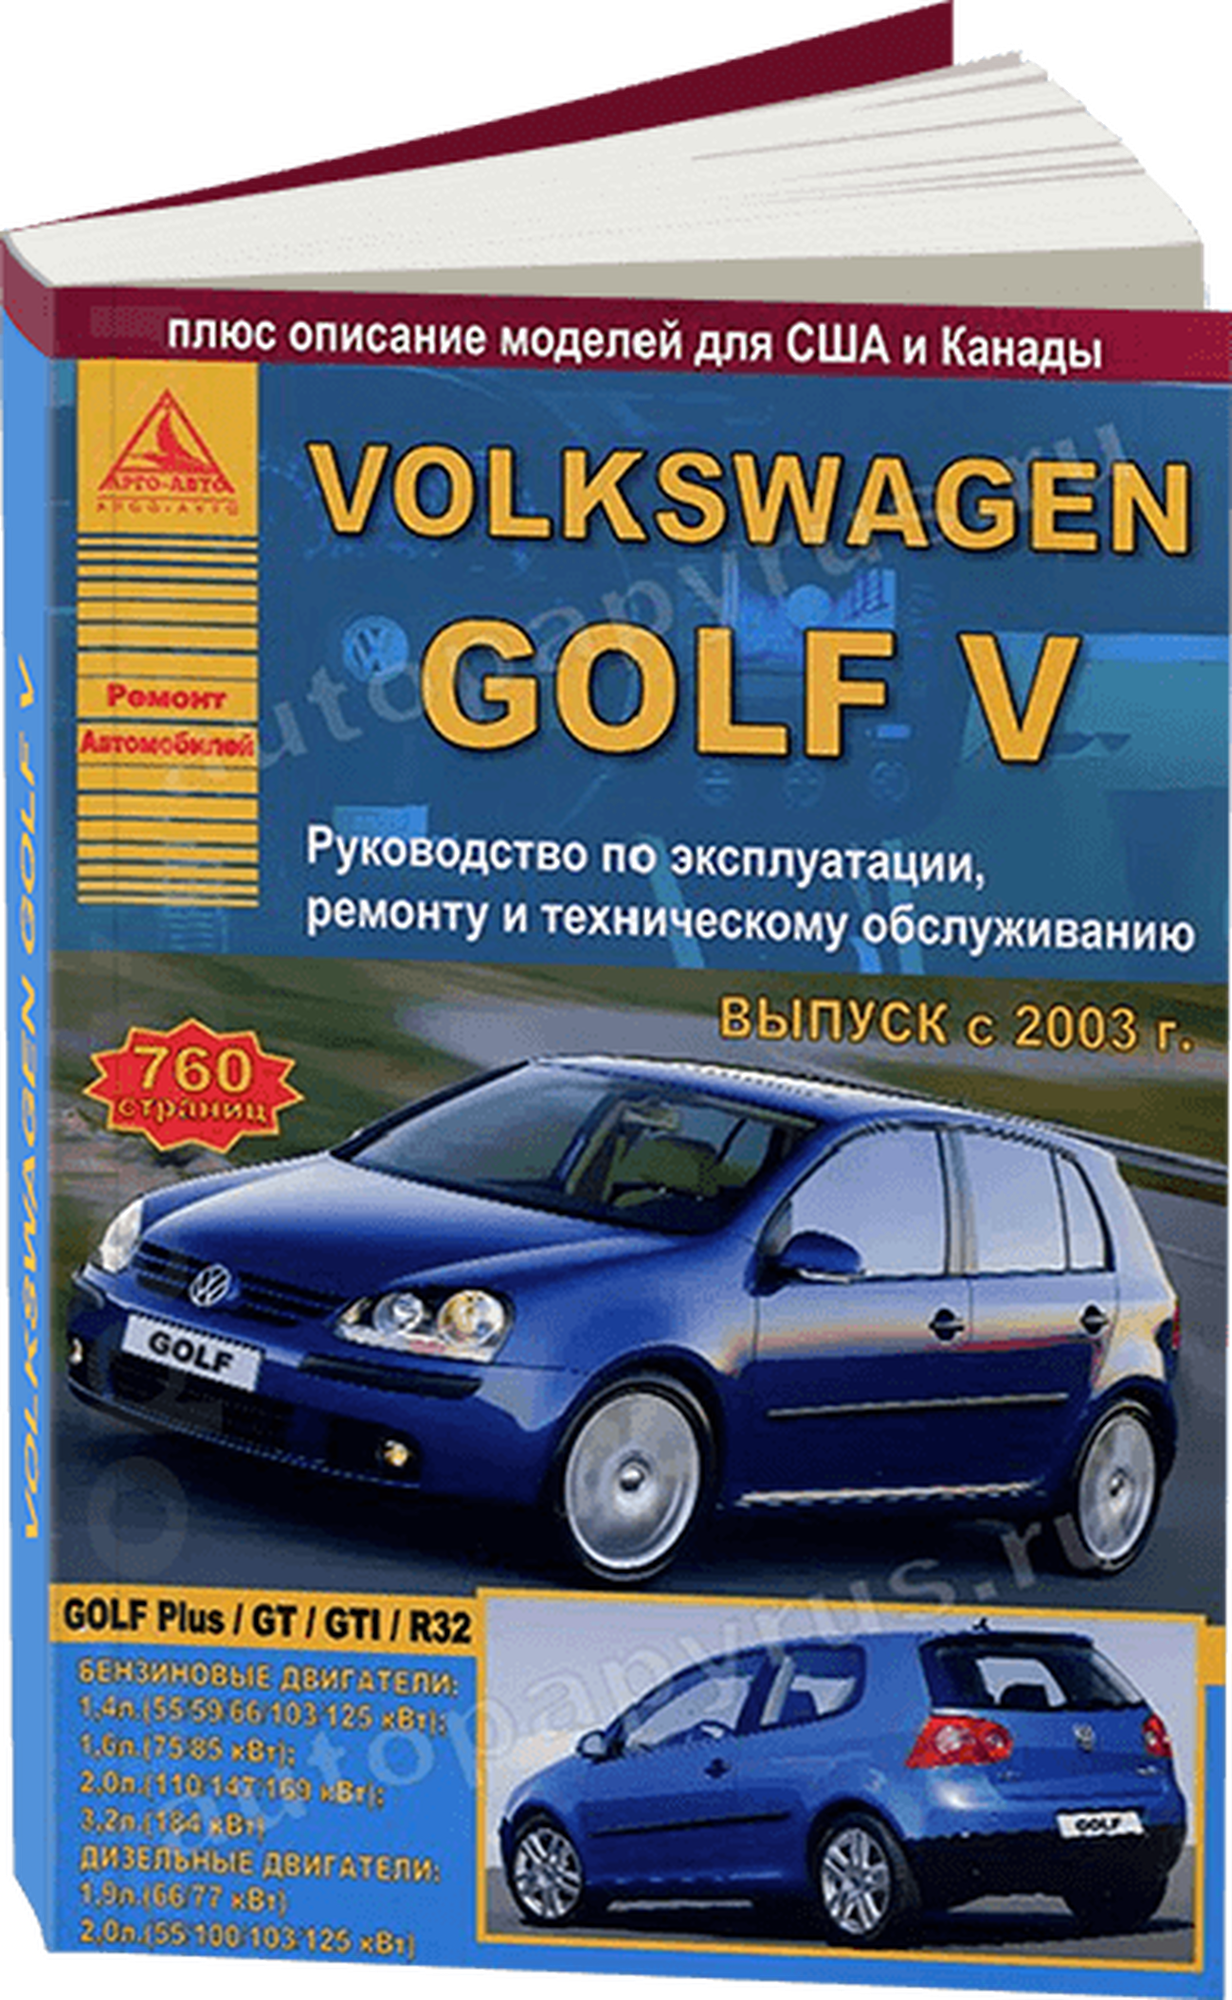 Автокнига: руководство / инструкция по ремонту и эксплуатации VOLKSWAGEN GOLF V (фольксваген гольф 5) бензин / дизель с 2003 года выпуска, 978-5-9545-0030-1, издательство Арго-Авто